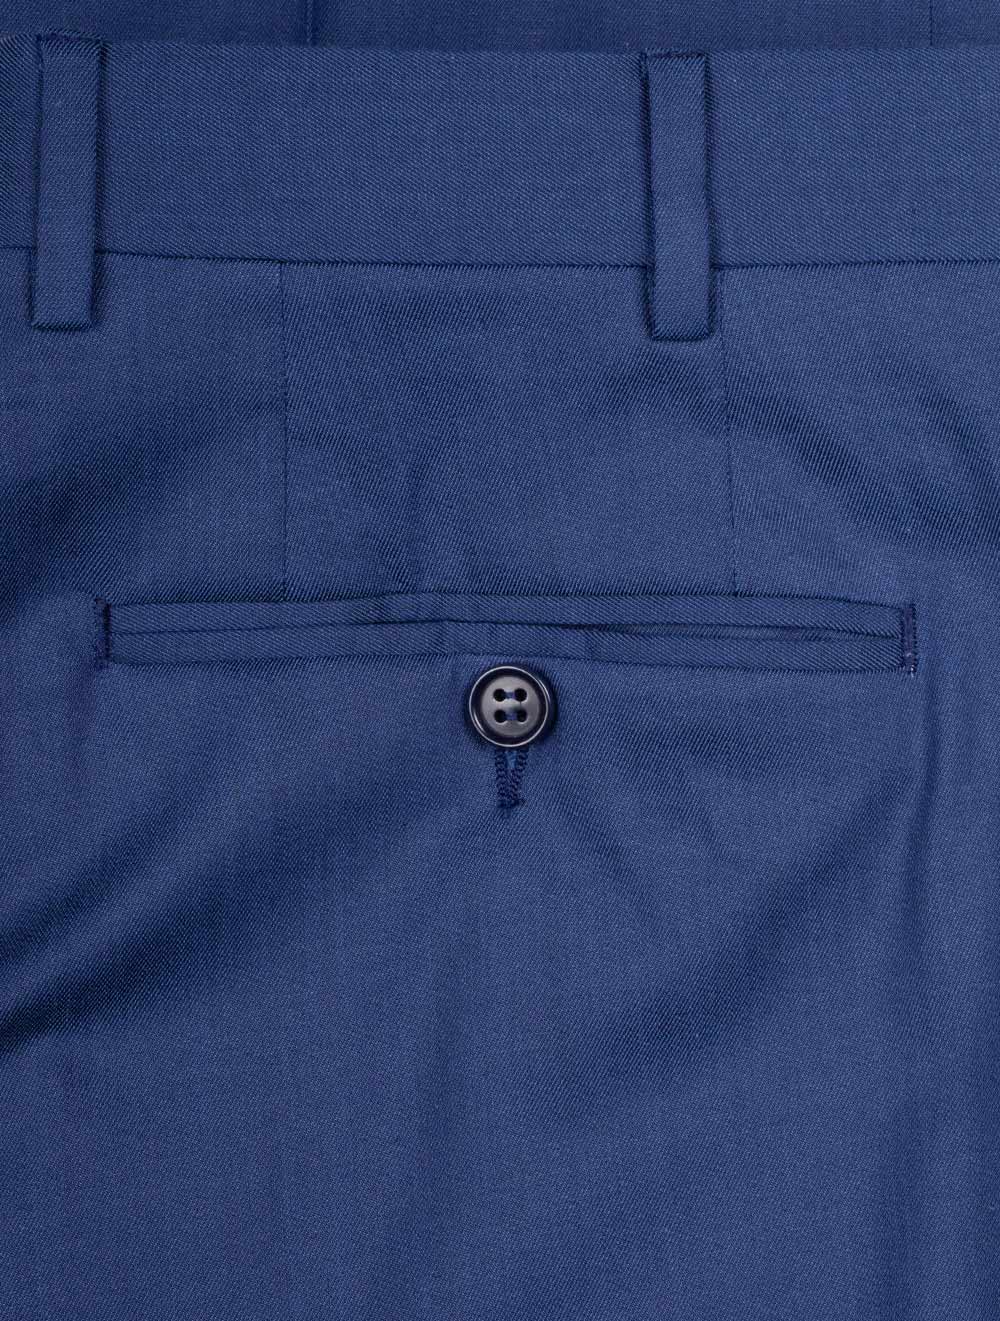 Formal Cotton Trouser Blue